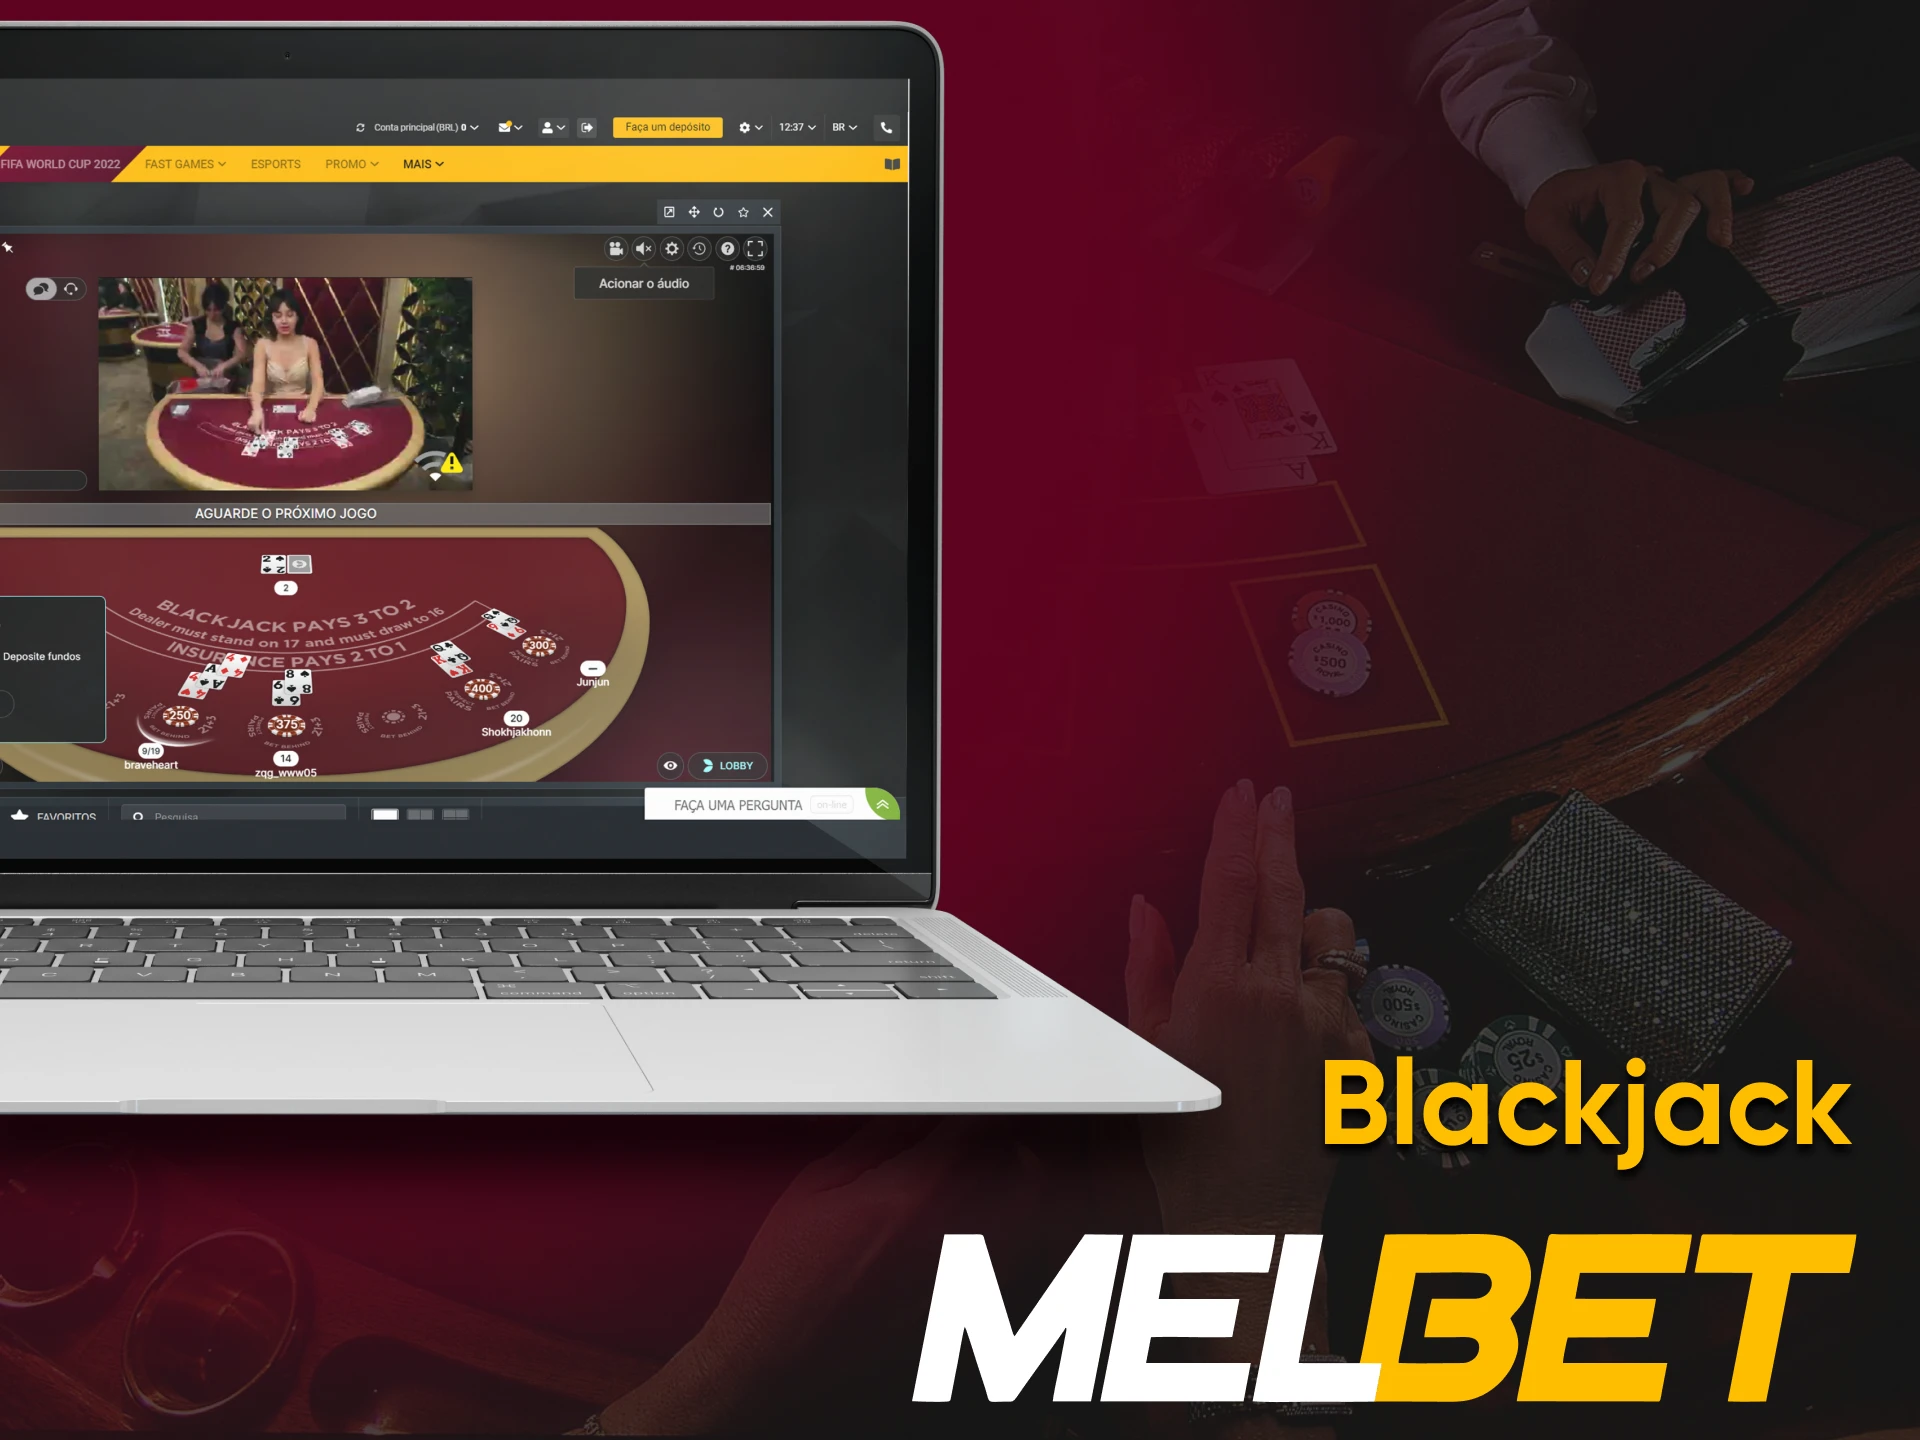 Para jogar Blackjack da Melbet, vá para a seção desejada.